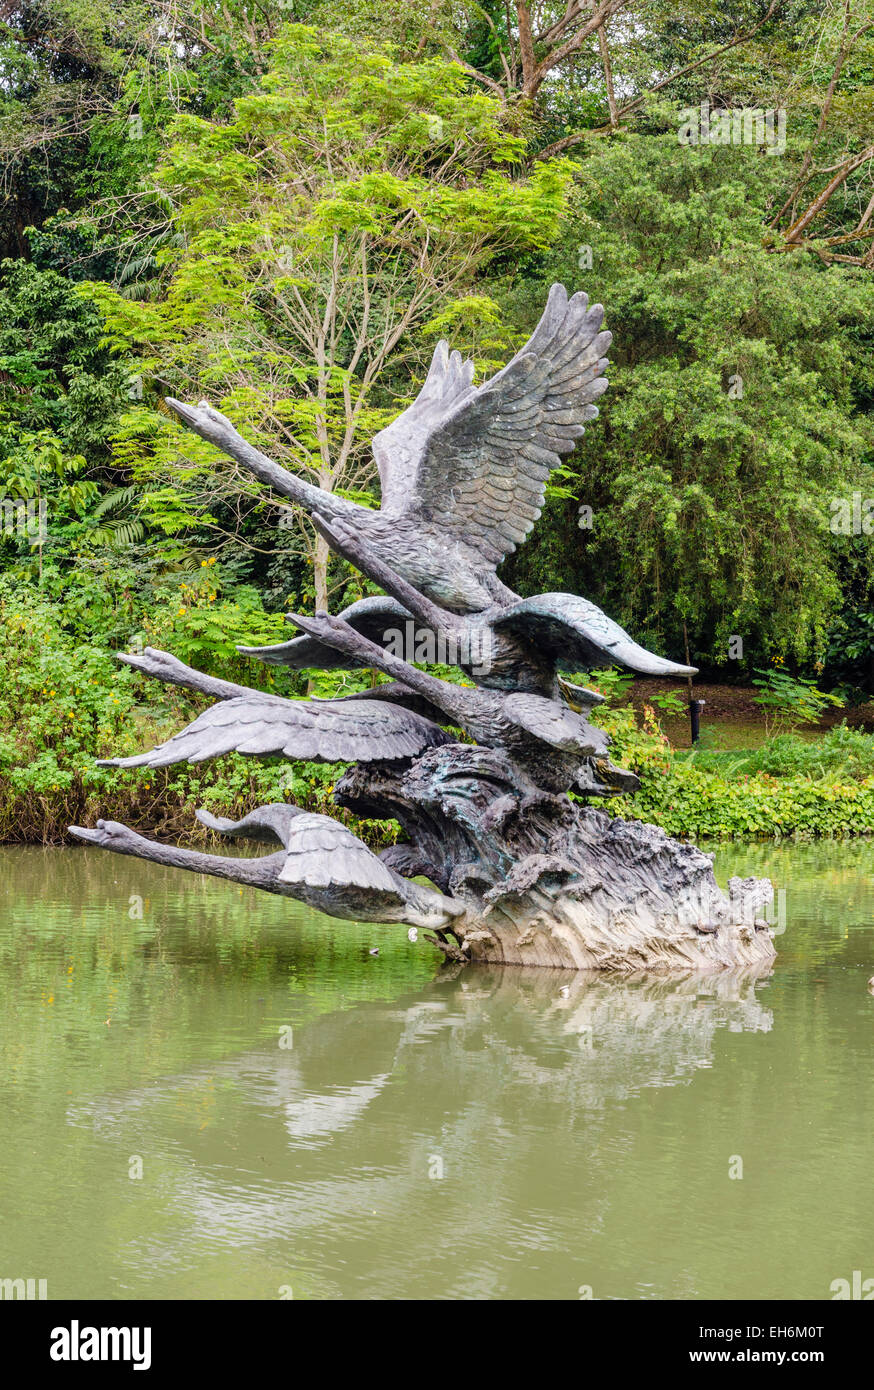 Flug der Schwäne Skulptur auf Swan Lake, eines der vielen Sehenswürdigkeiten in Singapore Botanic Gardens, Singapur Stockfoto